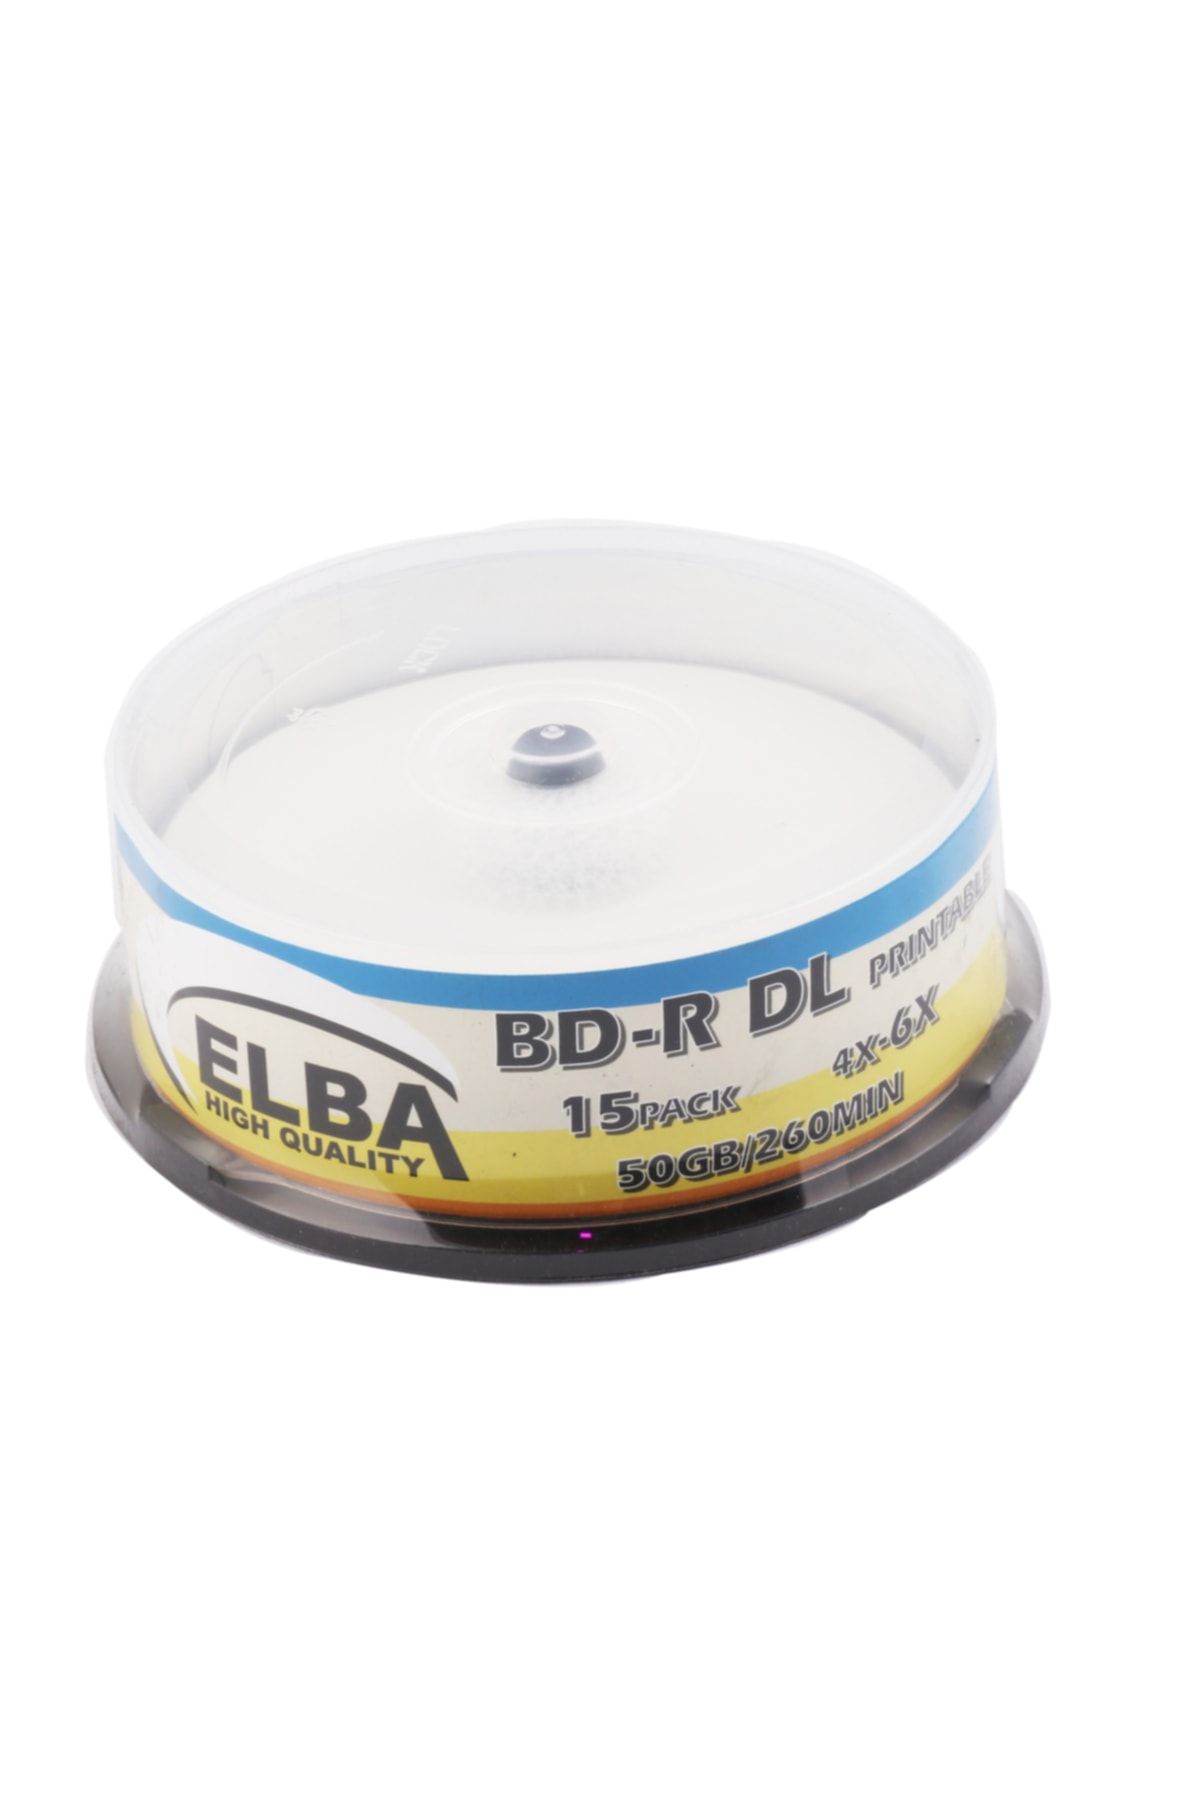 ELBA Blu-ray Bd-r 6x 50gb 15li Cake Box Prıntable